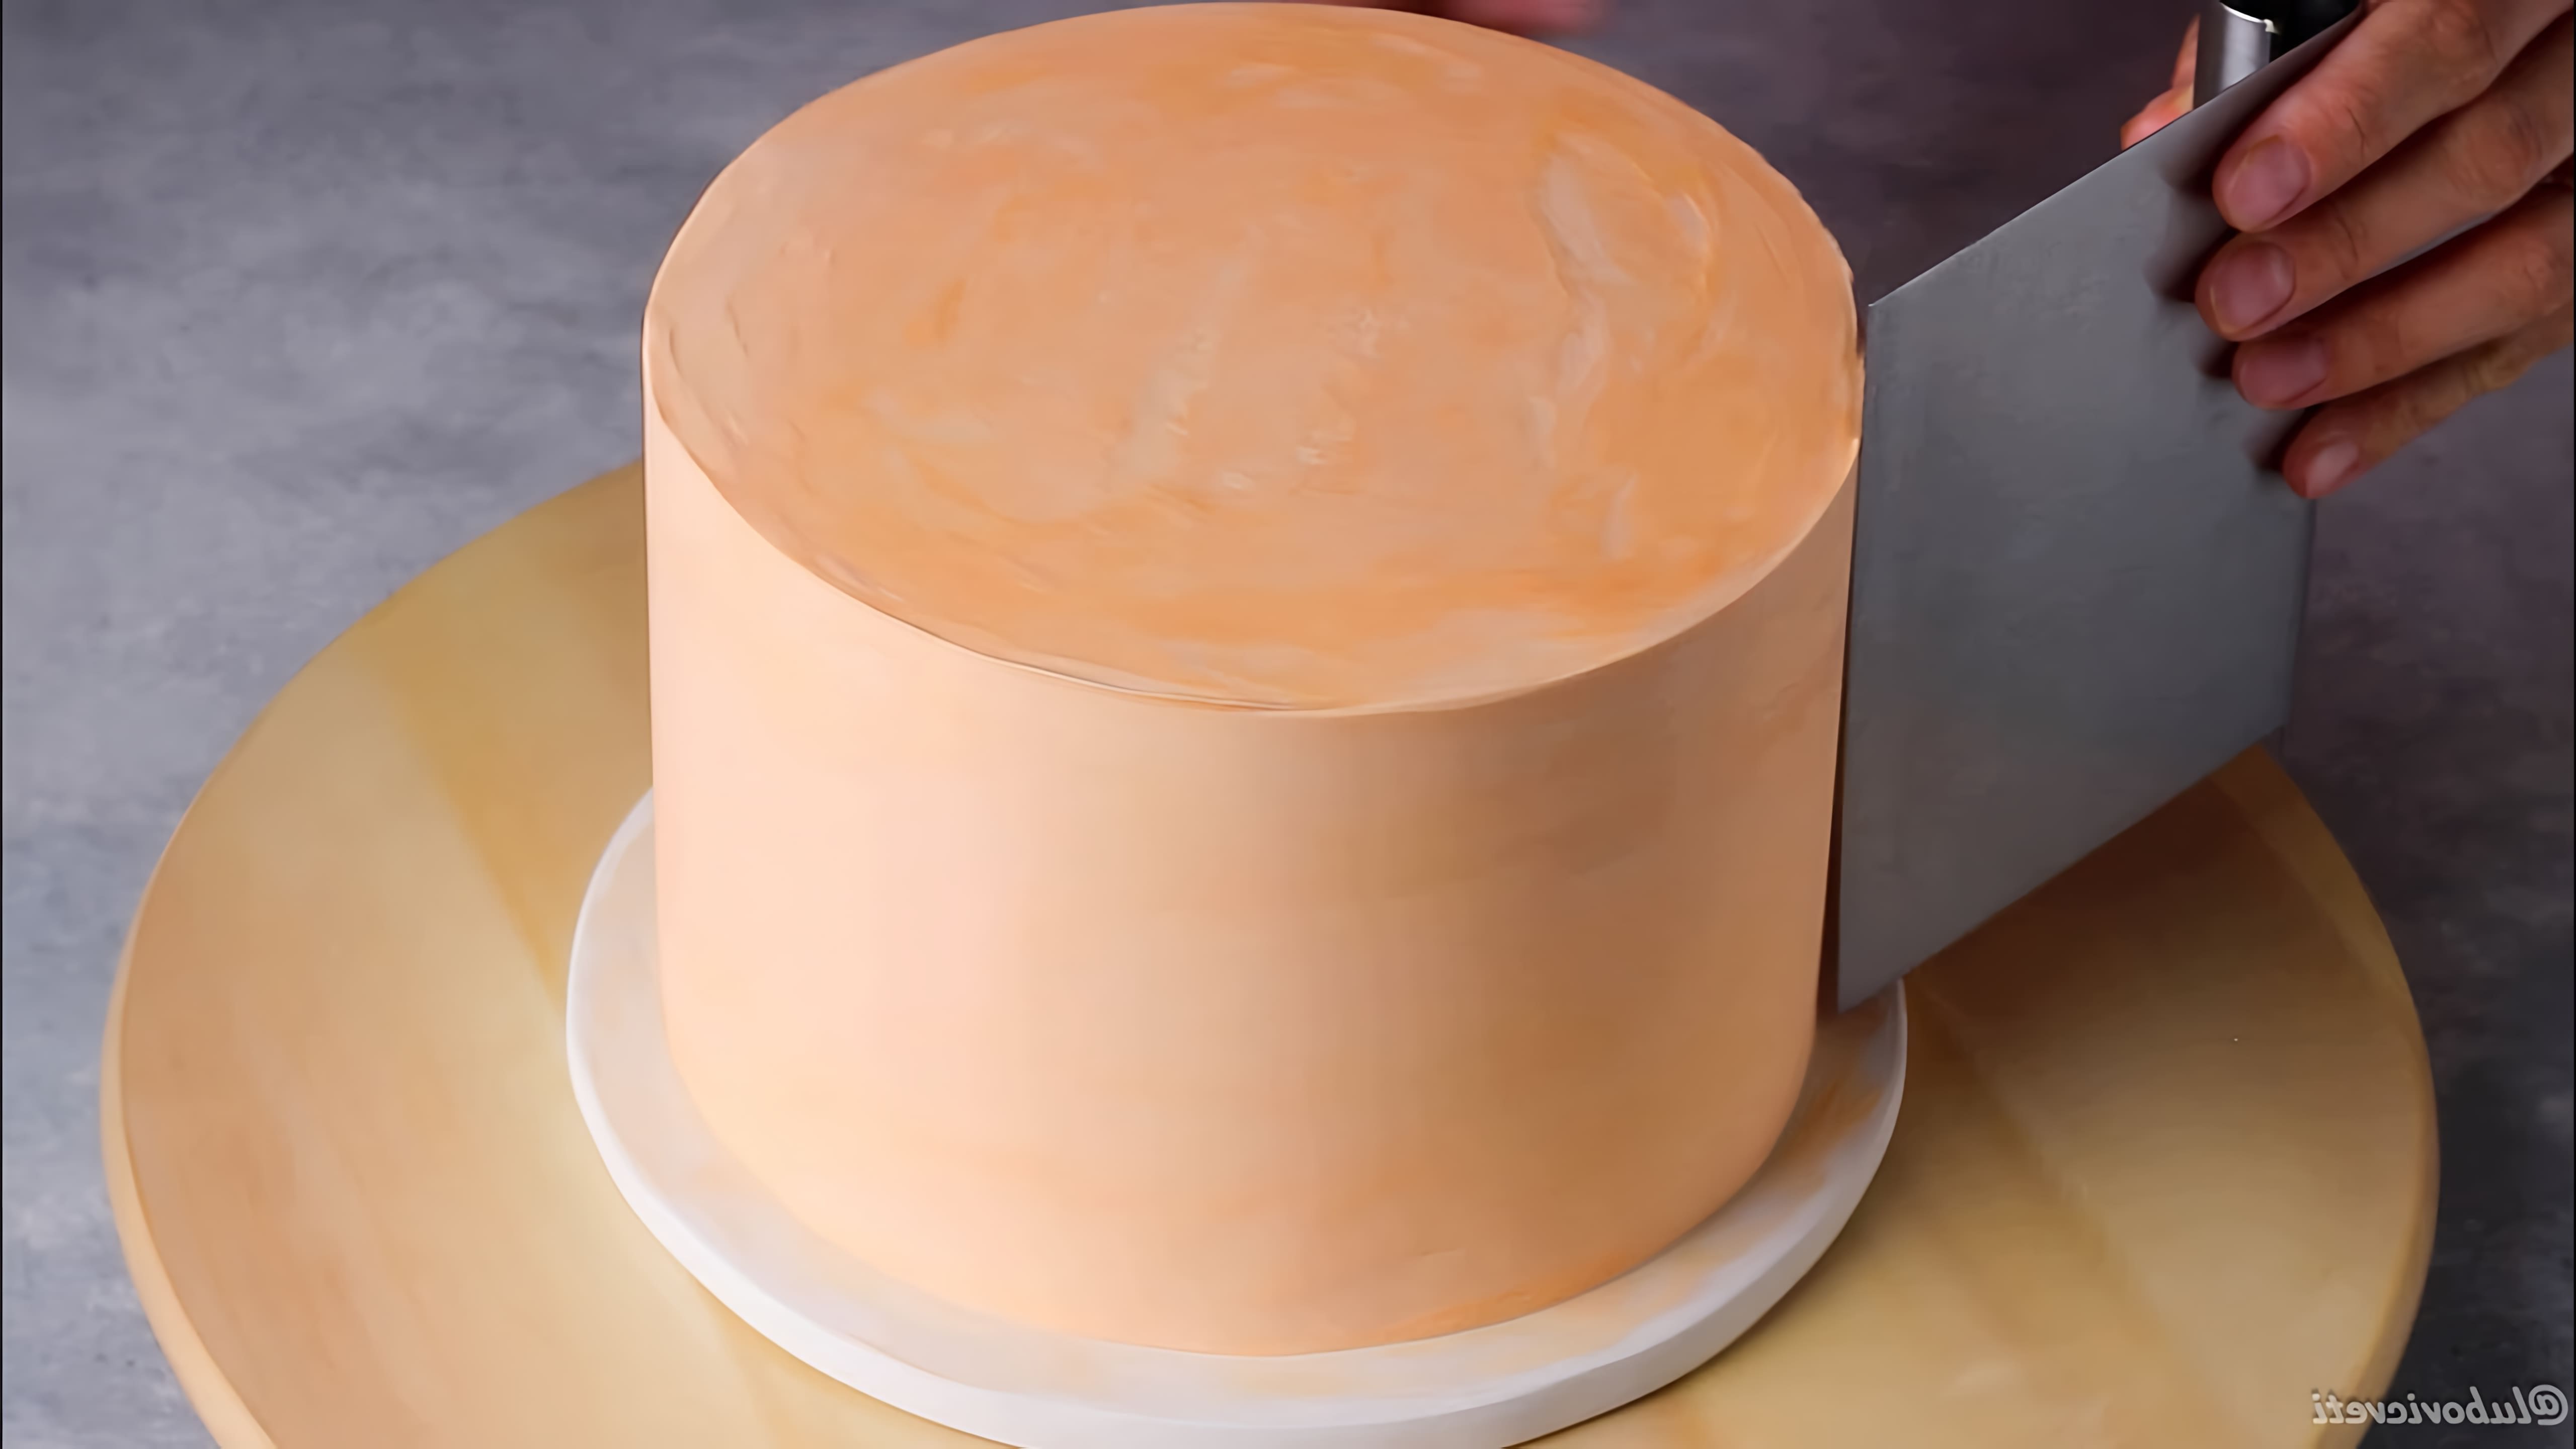 В этом видео демонстрируется рецепт творожного крема для выравнивания тортов